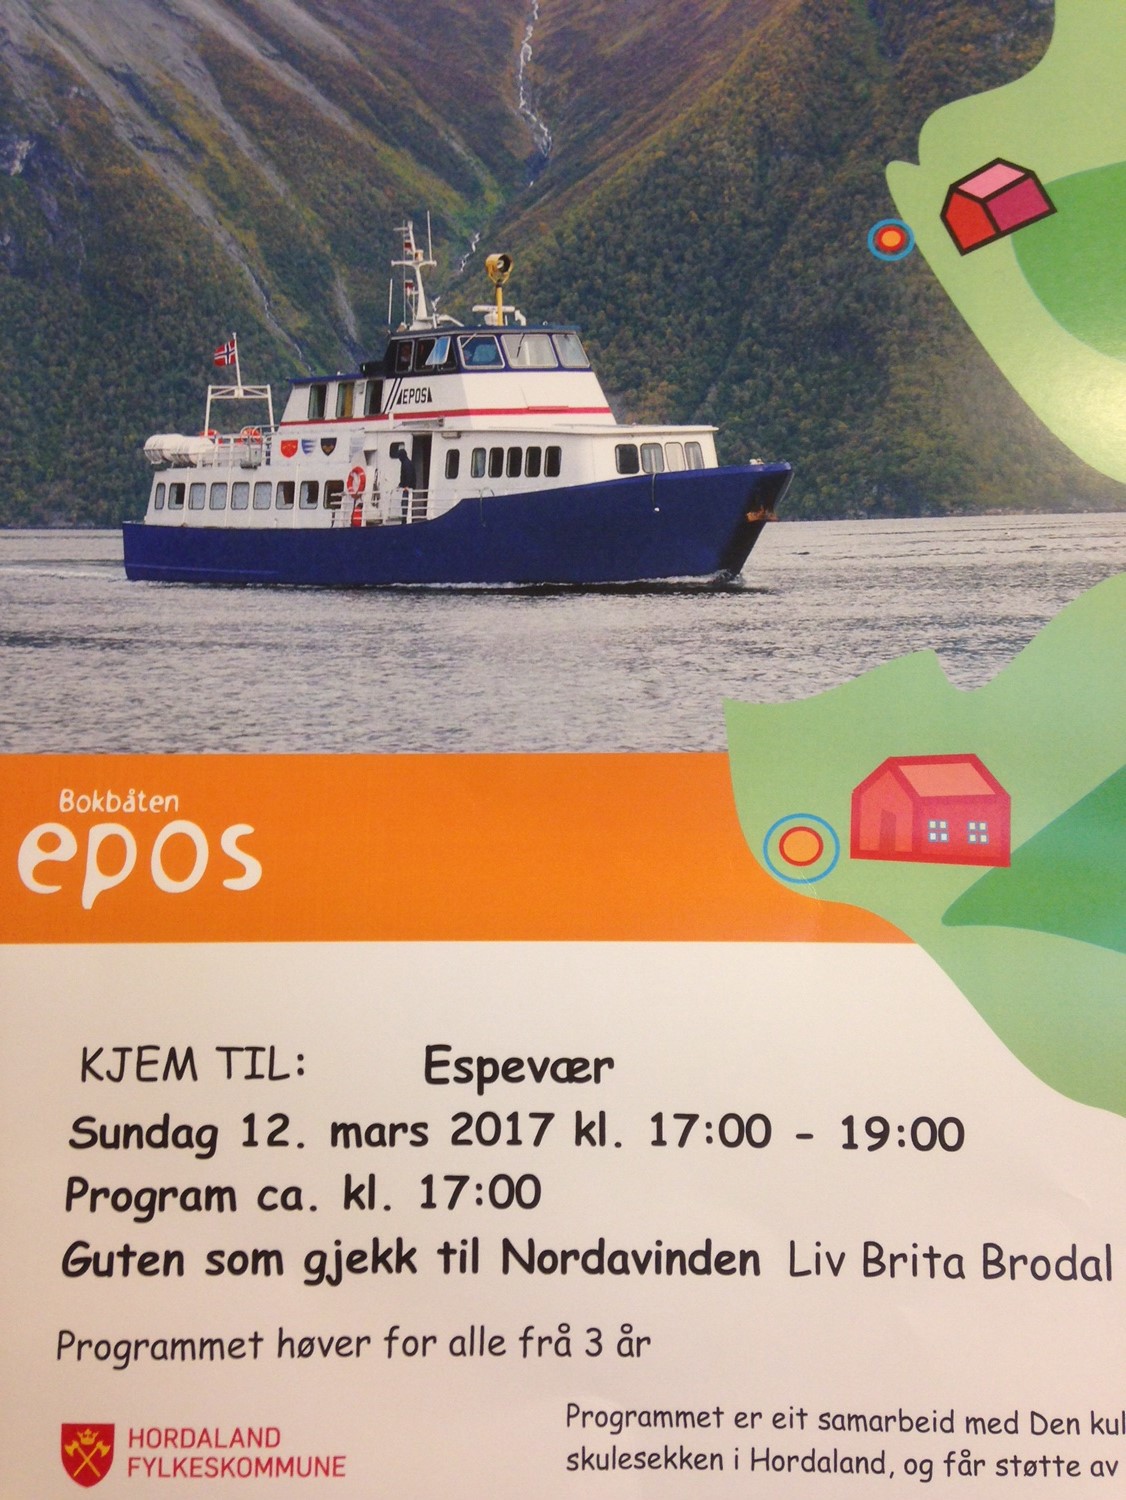 Bokbåten Epos kommer til Espevær